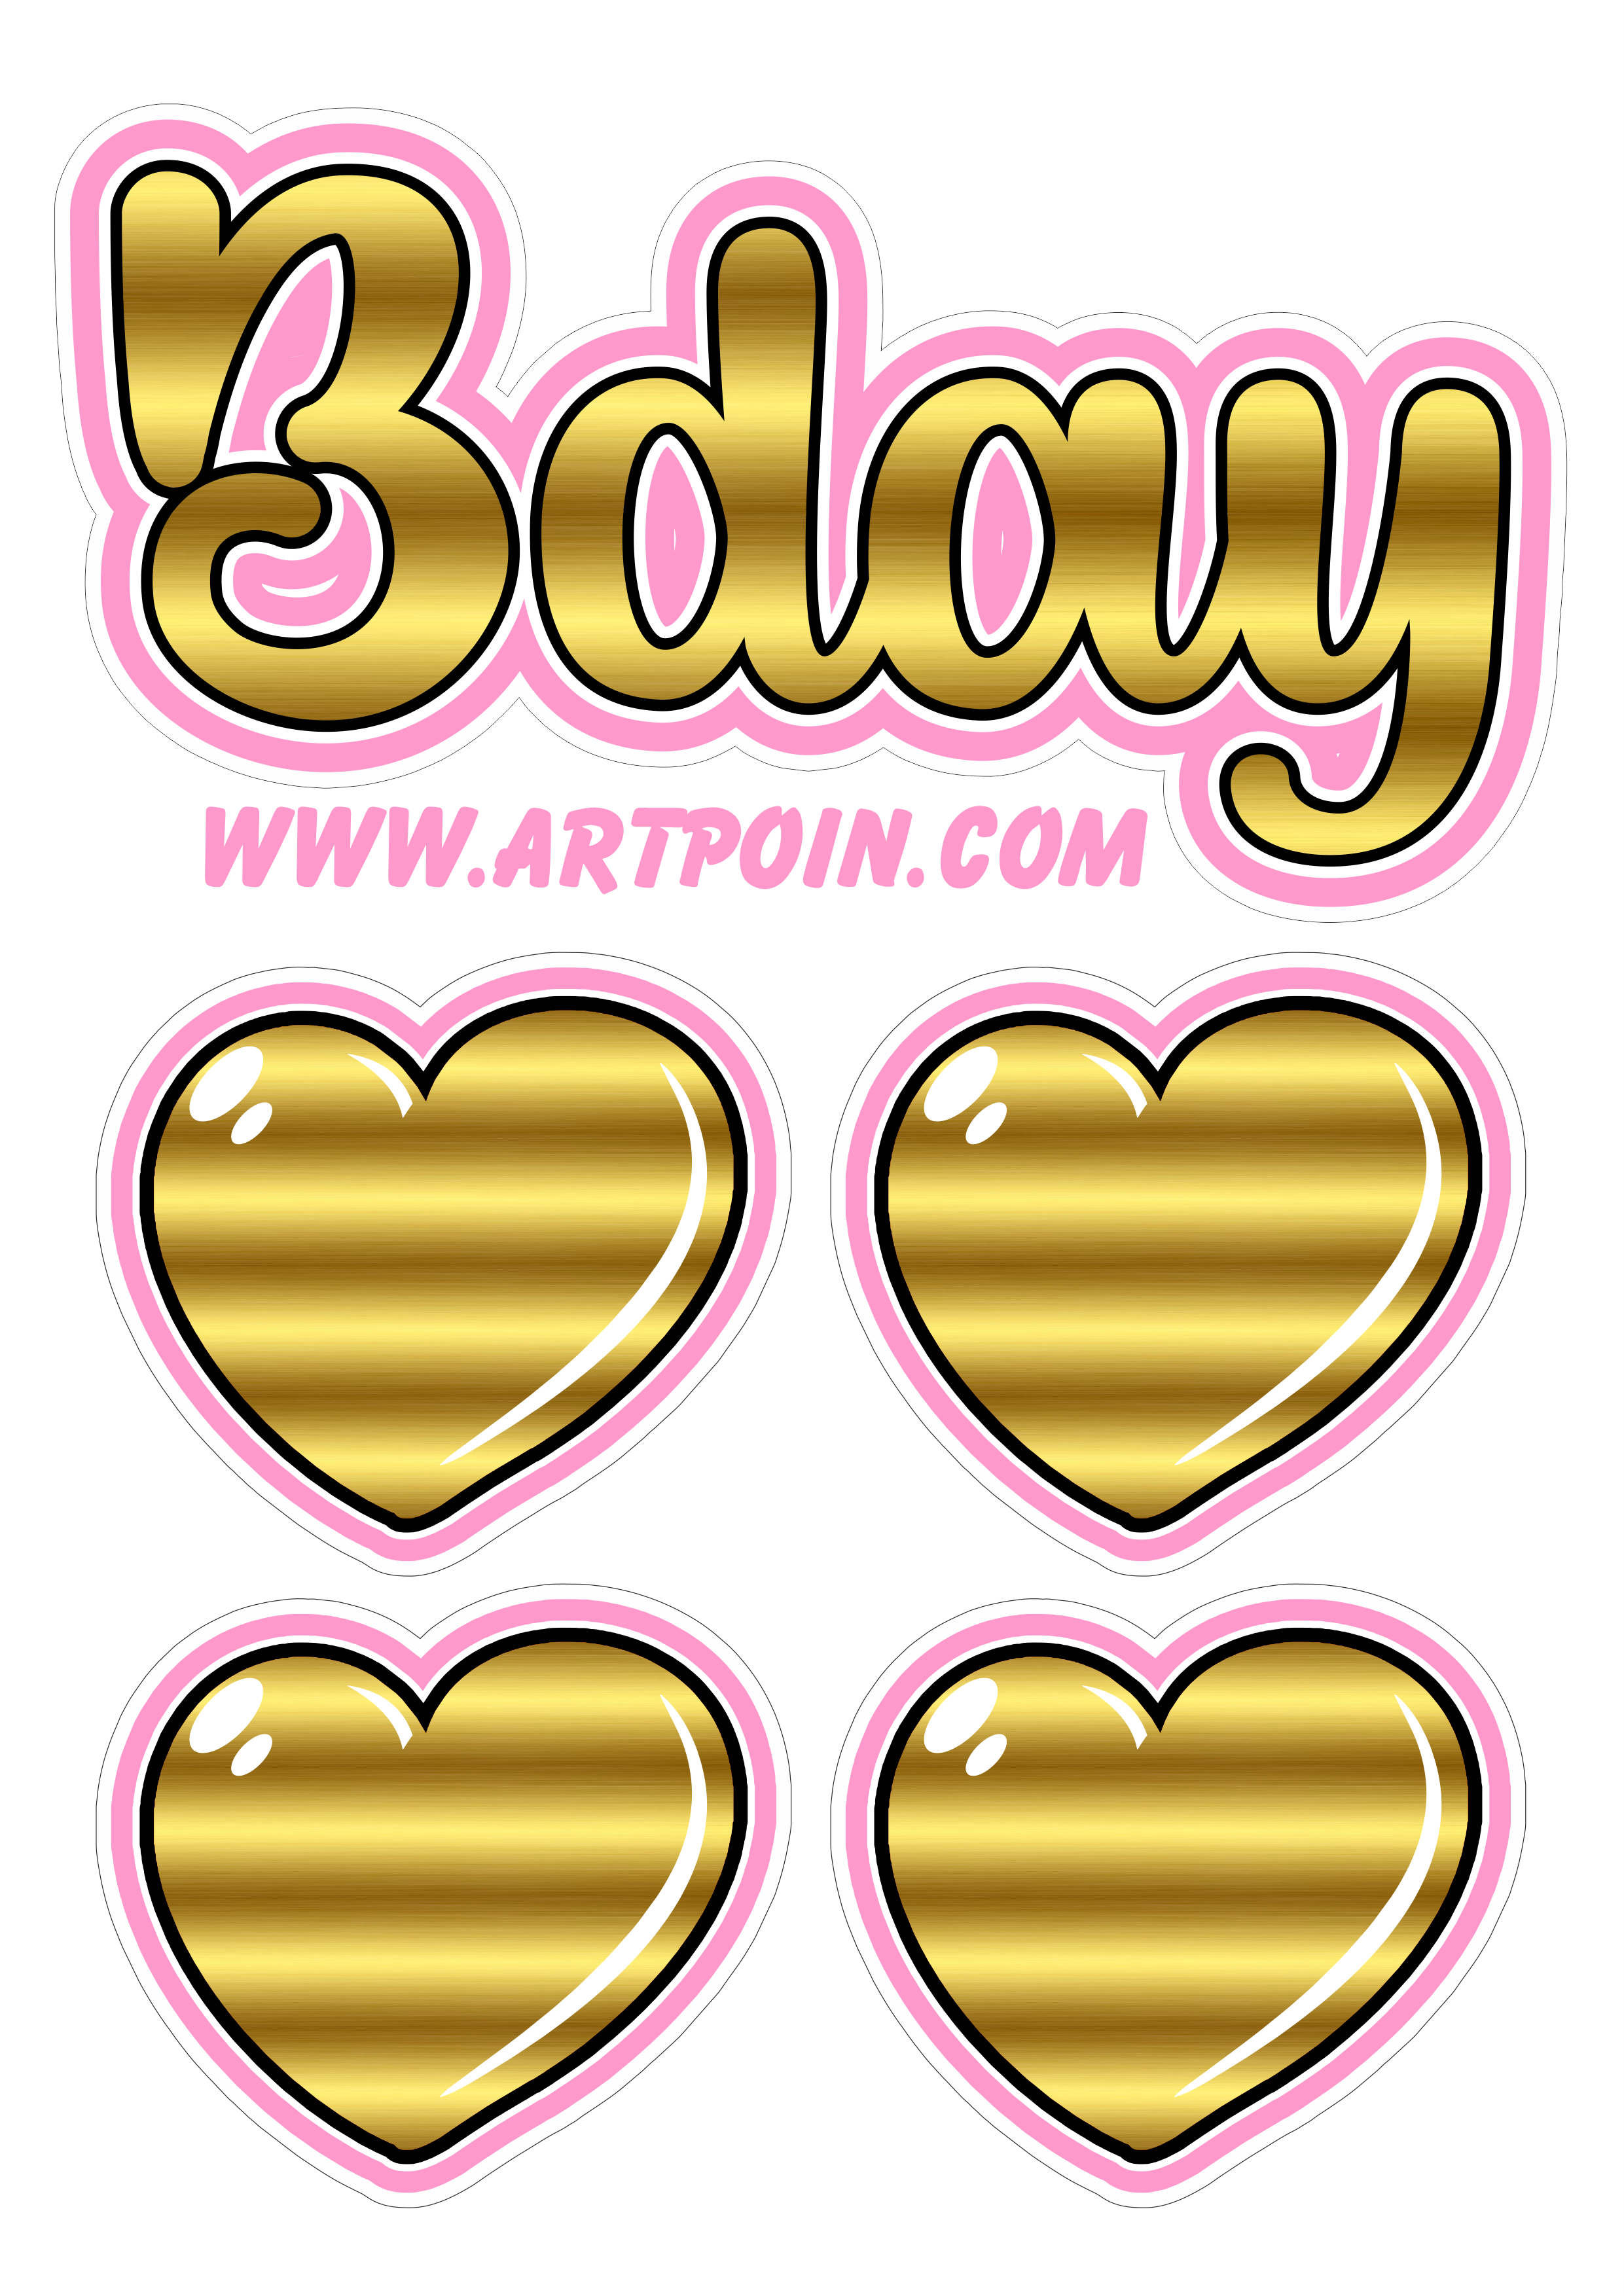 Topo de bolo dourado Bday ideial para decorações de festa de aniversário corações artigos de papelaria png